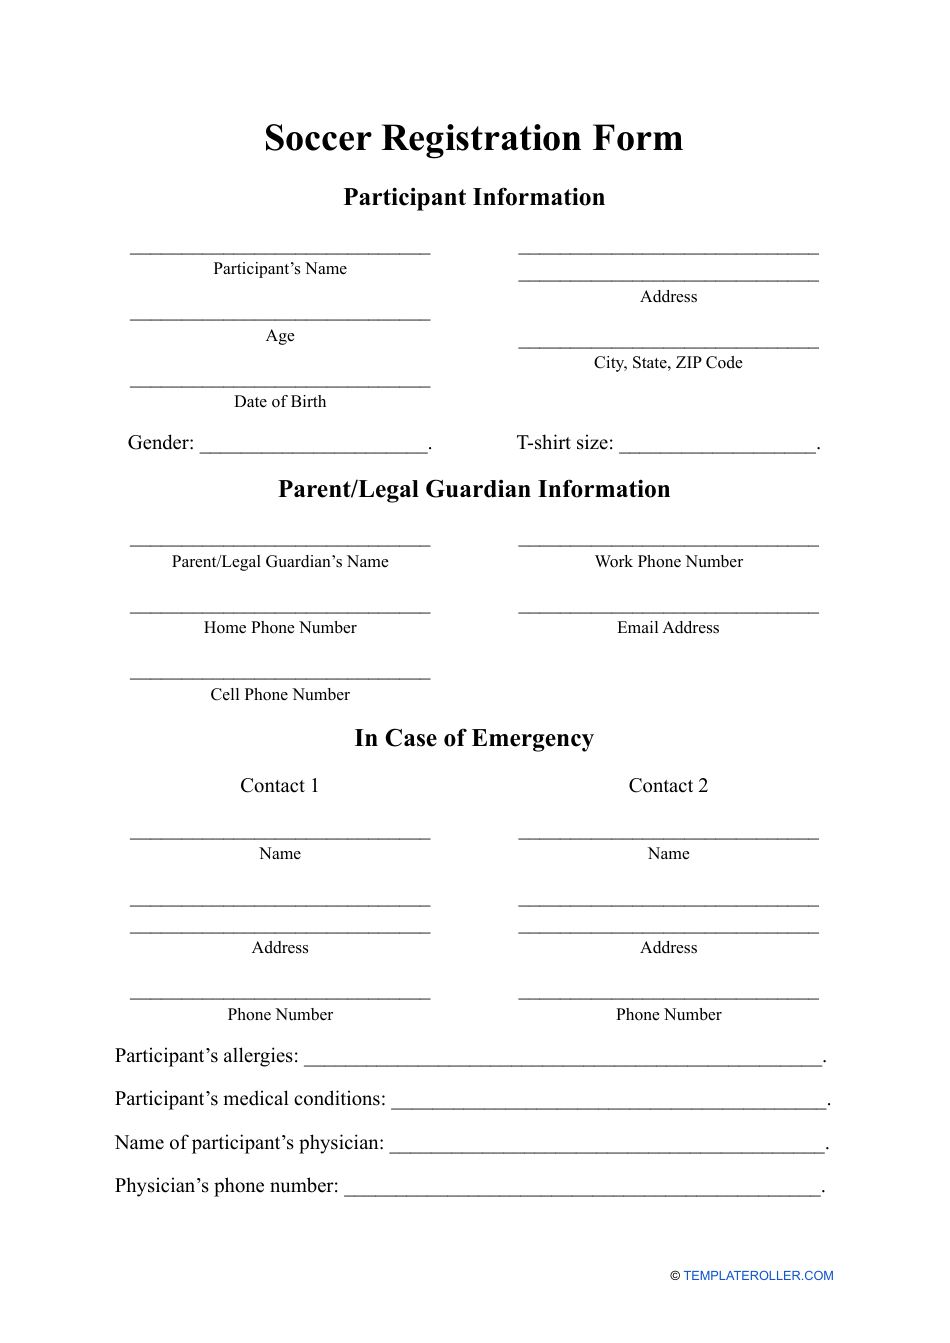 Soccer Registration Form, Page 1